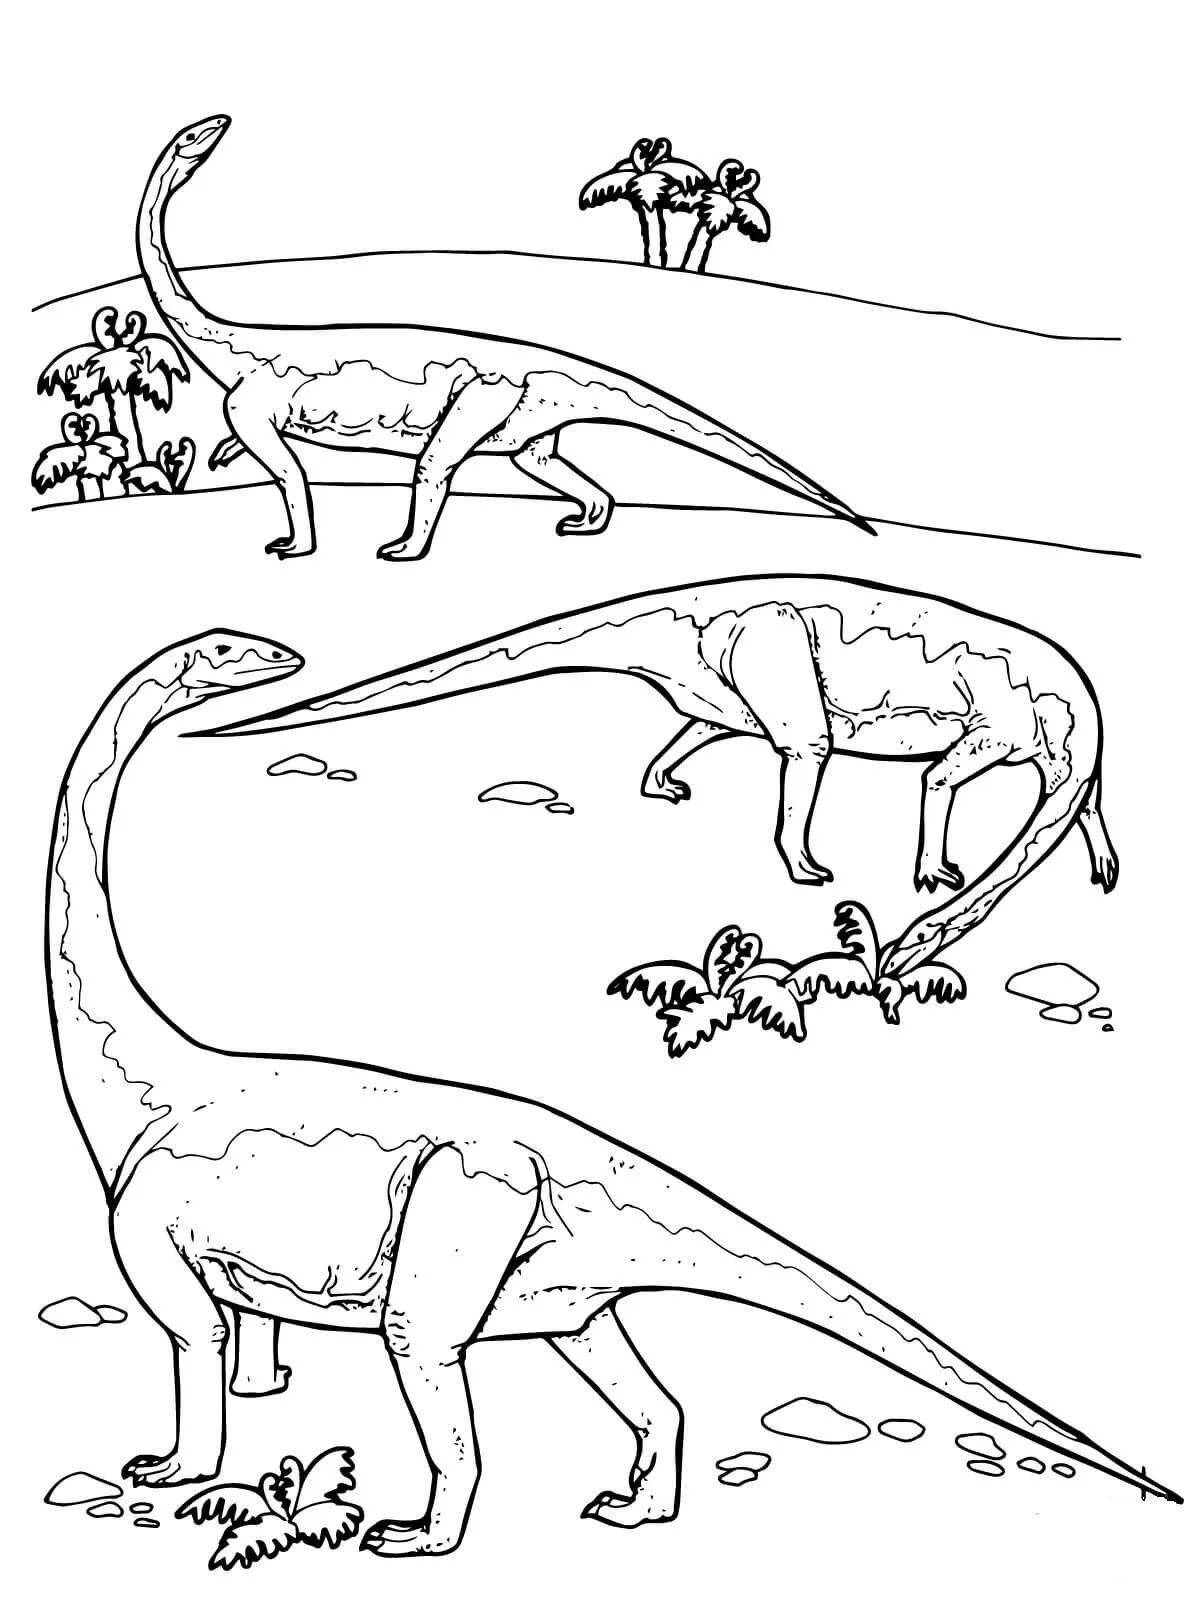 Diplodocus fun coloring book